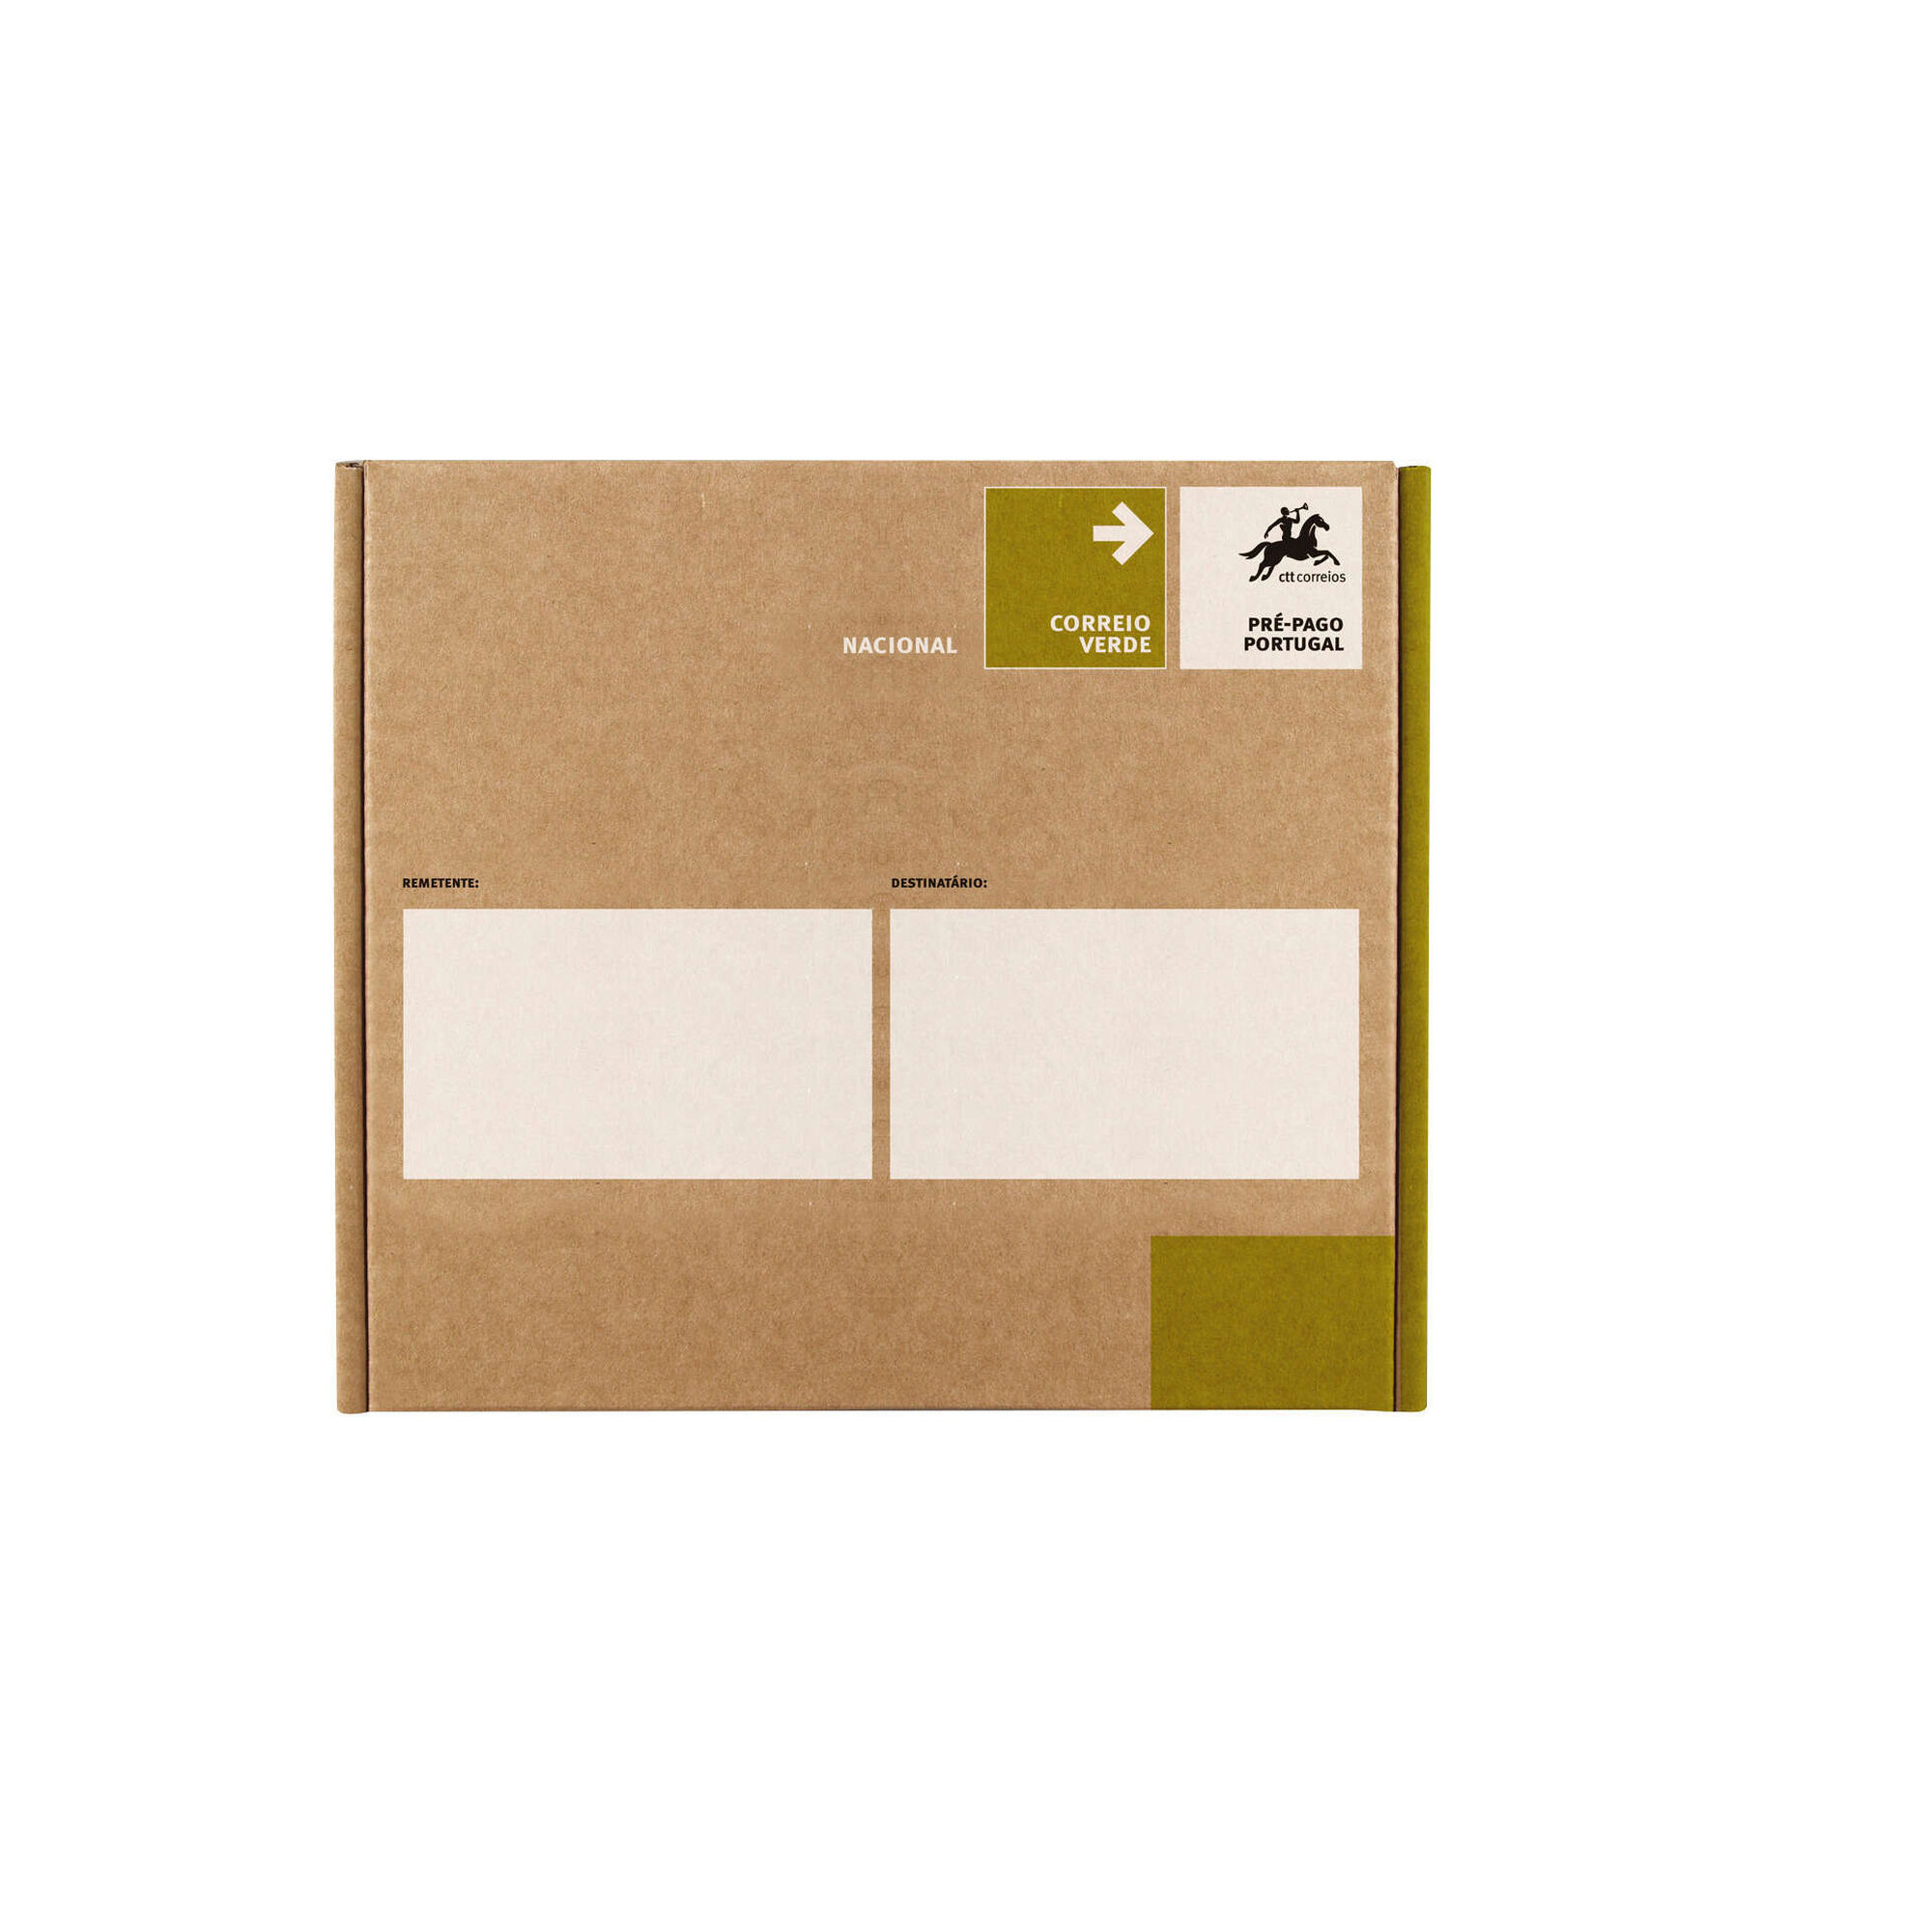 Caixa de Envelopes Correio Verde Nacional M 265x175mm